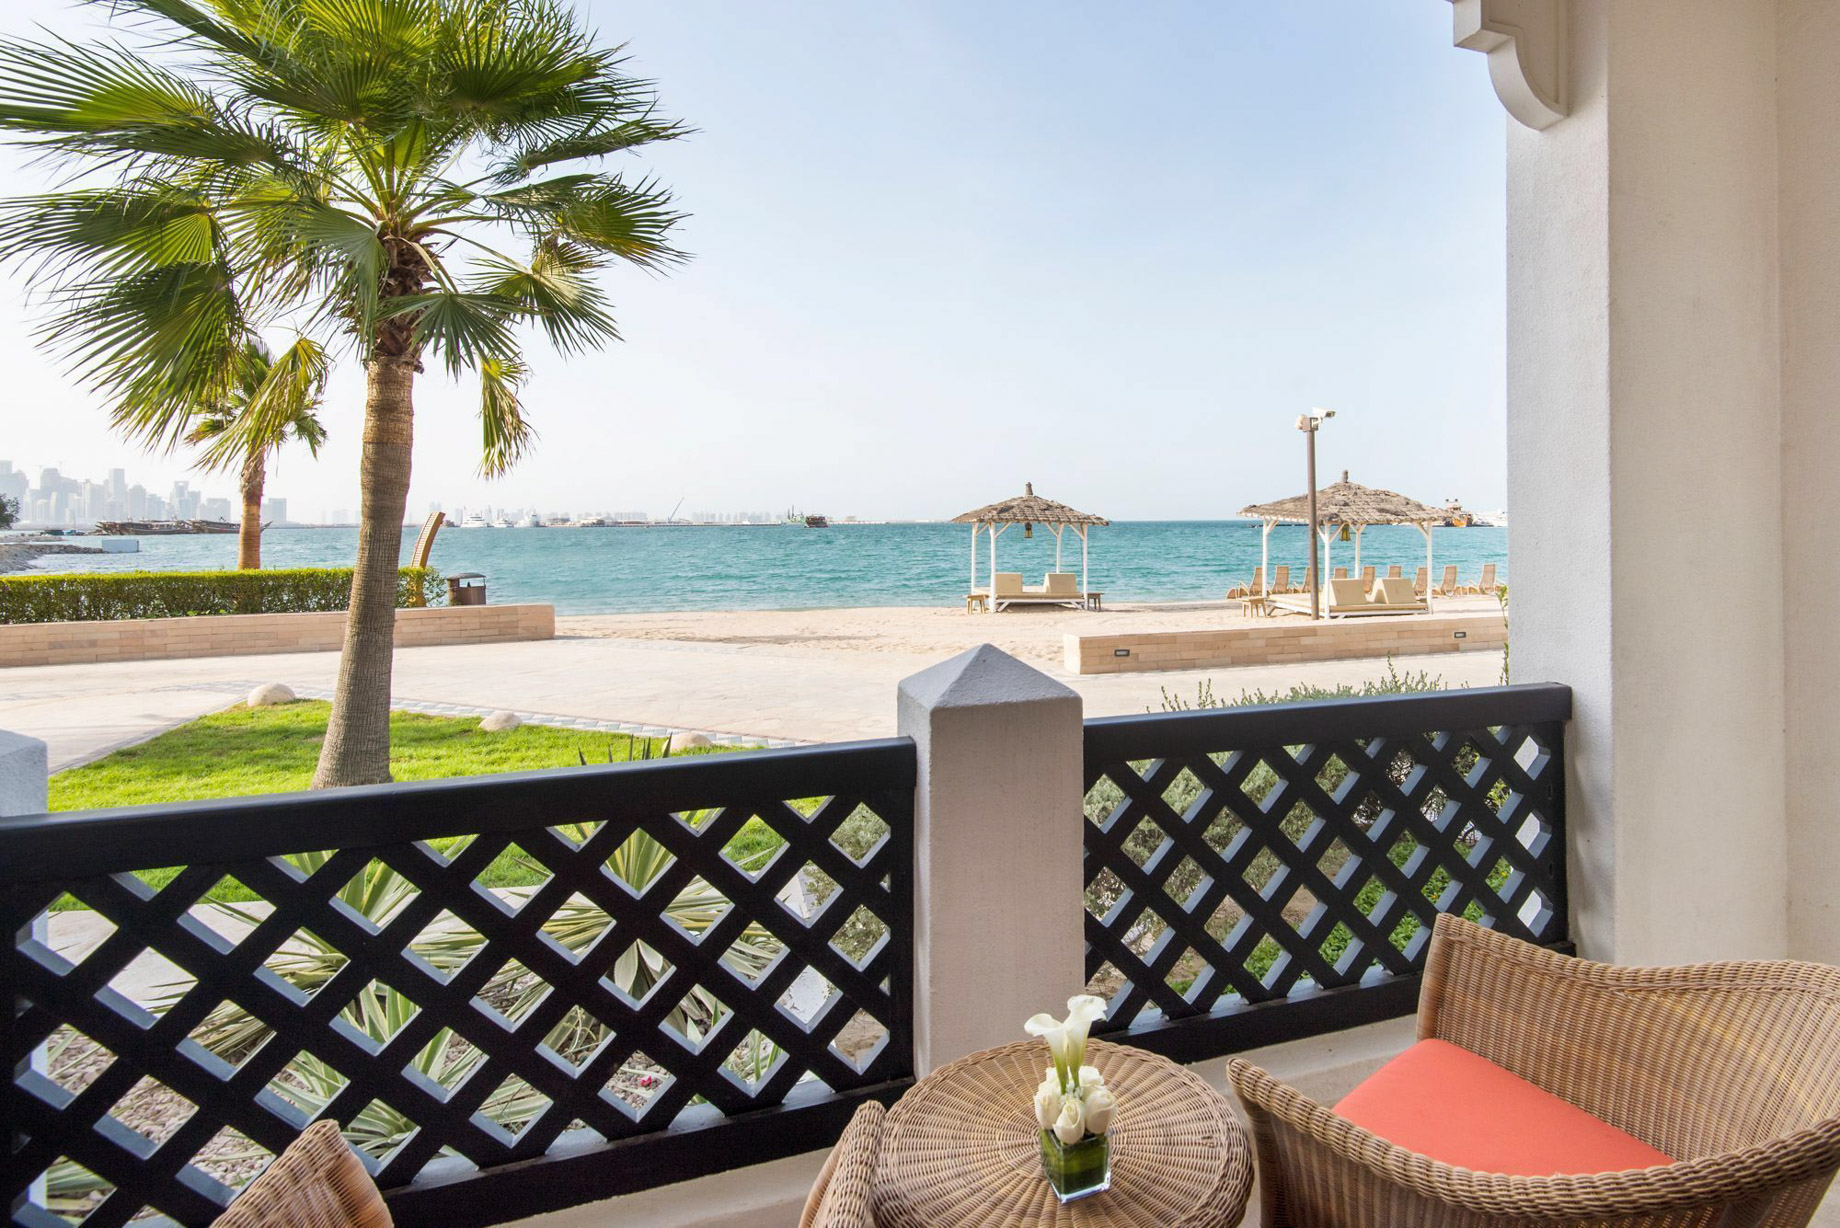 Sharq Village & Spa, A Ritz-Carlton Hotel – Doha, Qatar – Guest Room Balcony Ocean View